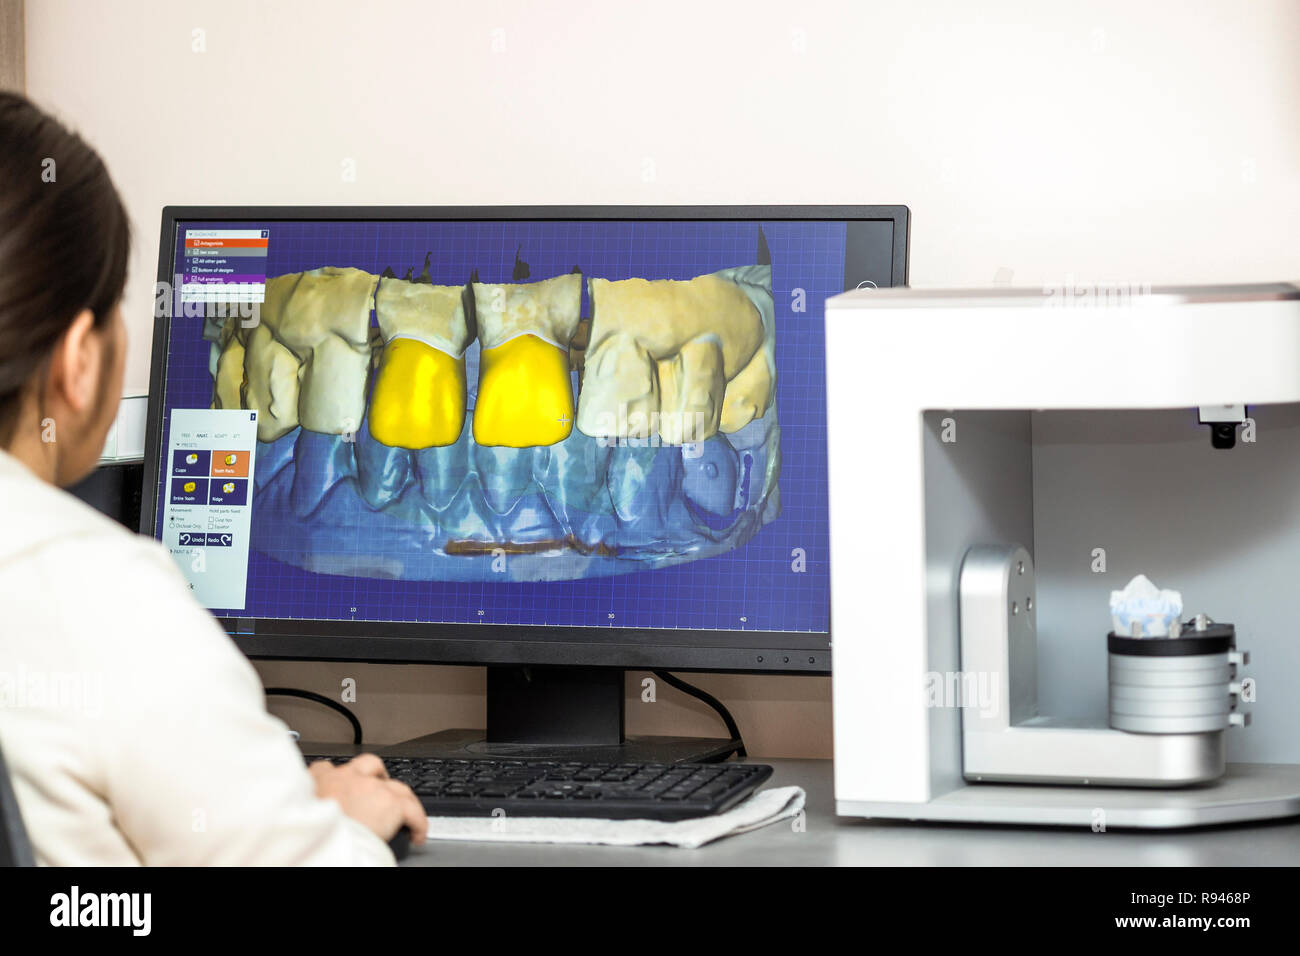 Personne travaillant sur ordinateur avec logiciel dentaire plate-forme pour faire de prothèse dentaire. Processus de fabrication de prothèse dentaire en utilisant un logiciel spécifique. Banque D'Images